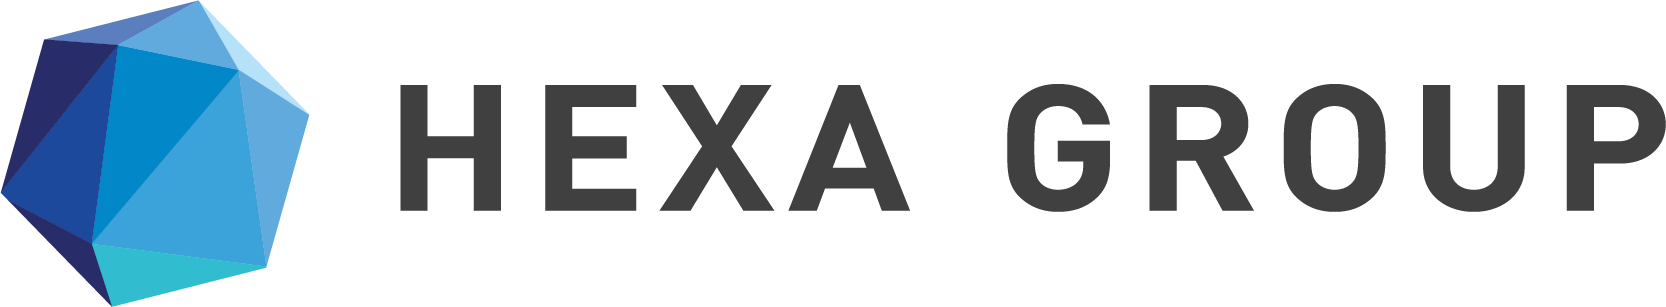 Hexa Group Logo